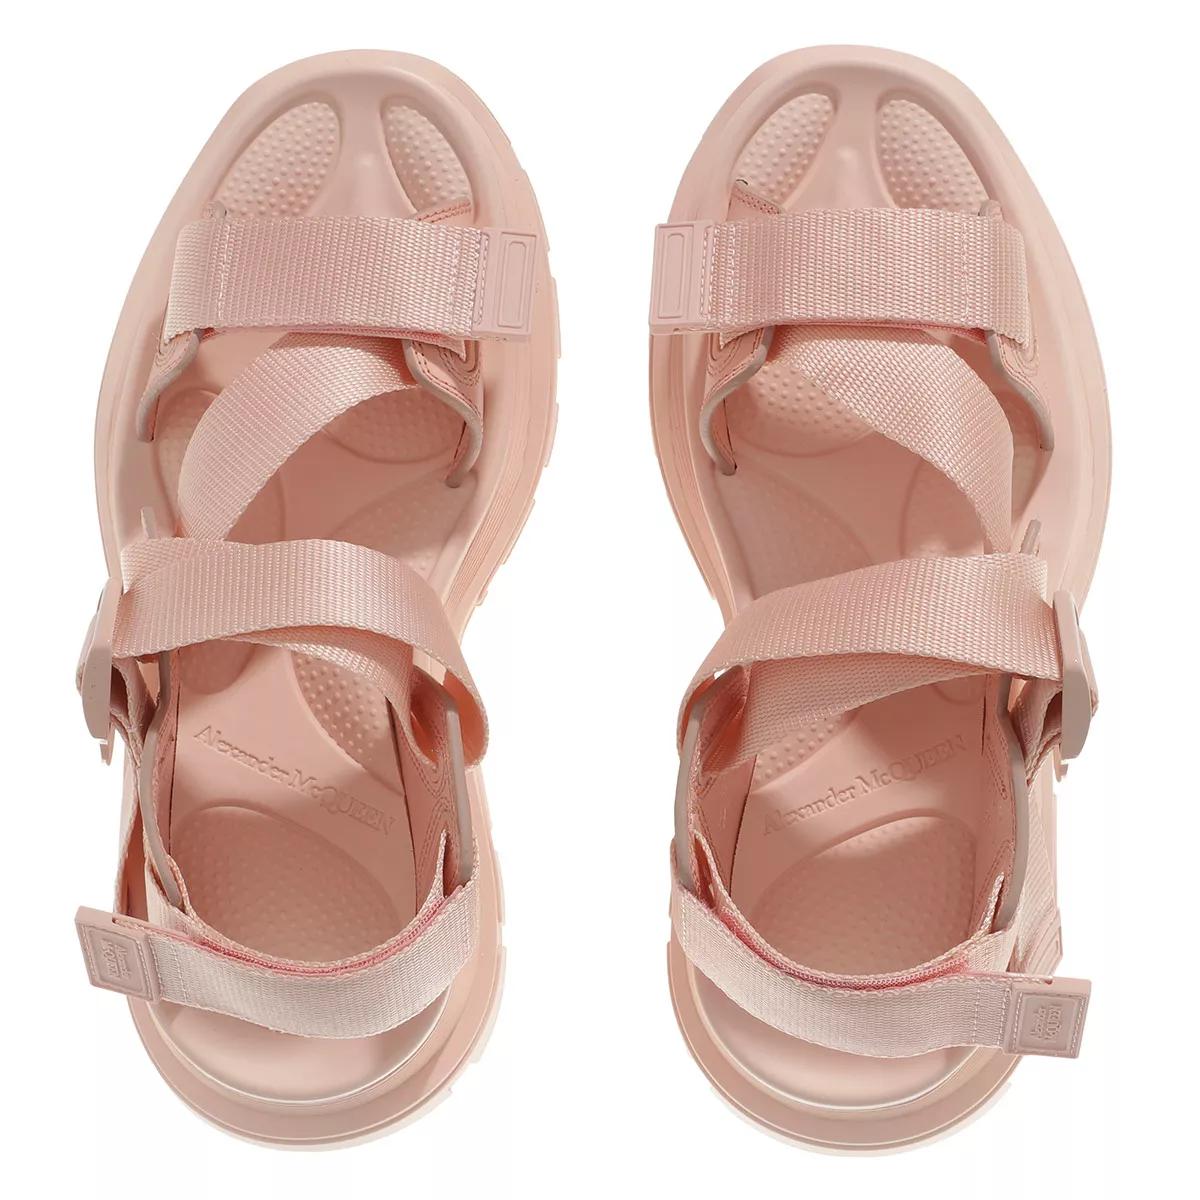 Alexander McQueen Sandalen & Sandaletten - Tread Sandals - Gr. 38,5 (EU) - in Gold - für Damen von alexander mcqueen